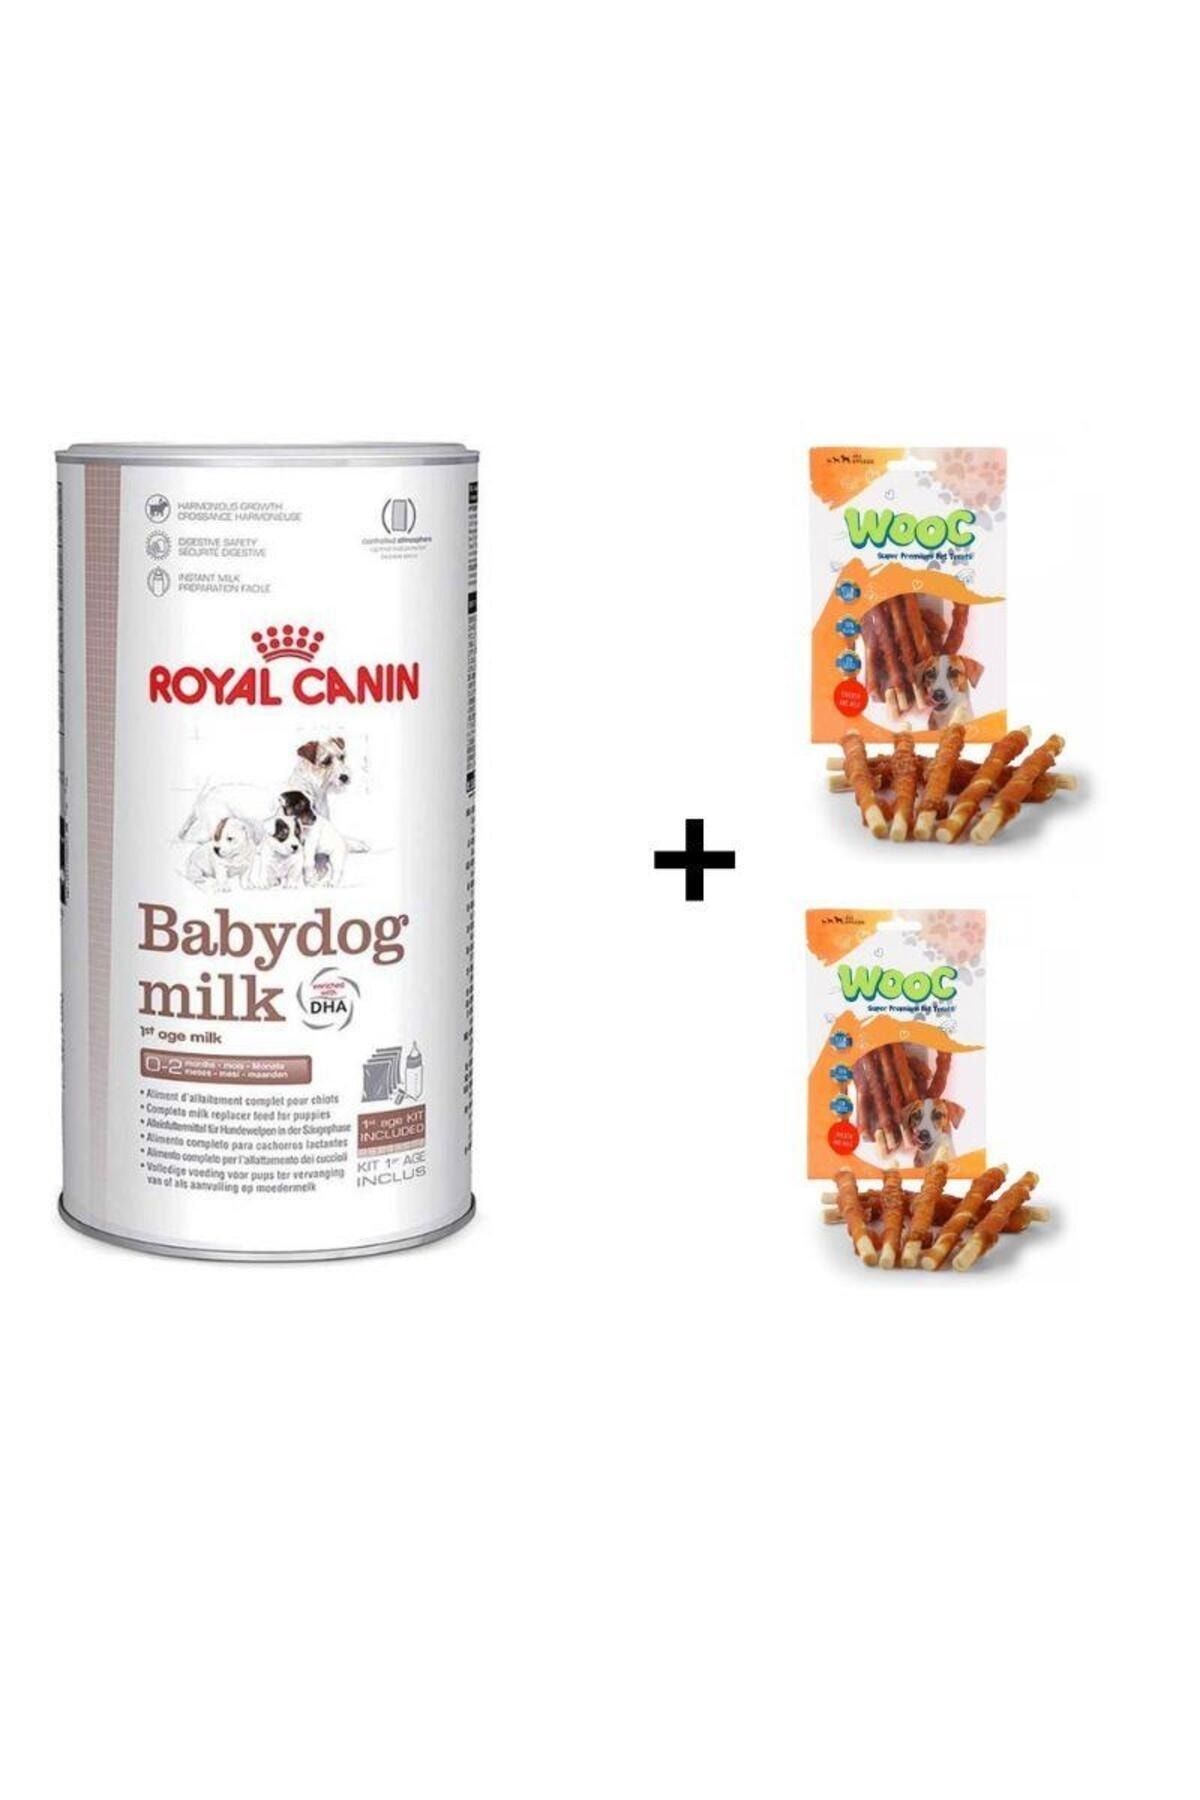 Royal Canin Babydog Milk Yavru Köpek Süt Tozu 400 gr + 2 Adet Wooc Ödül 80 Gr